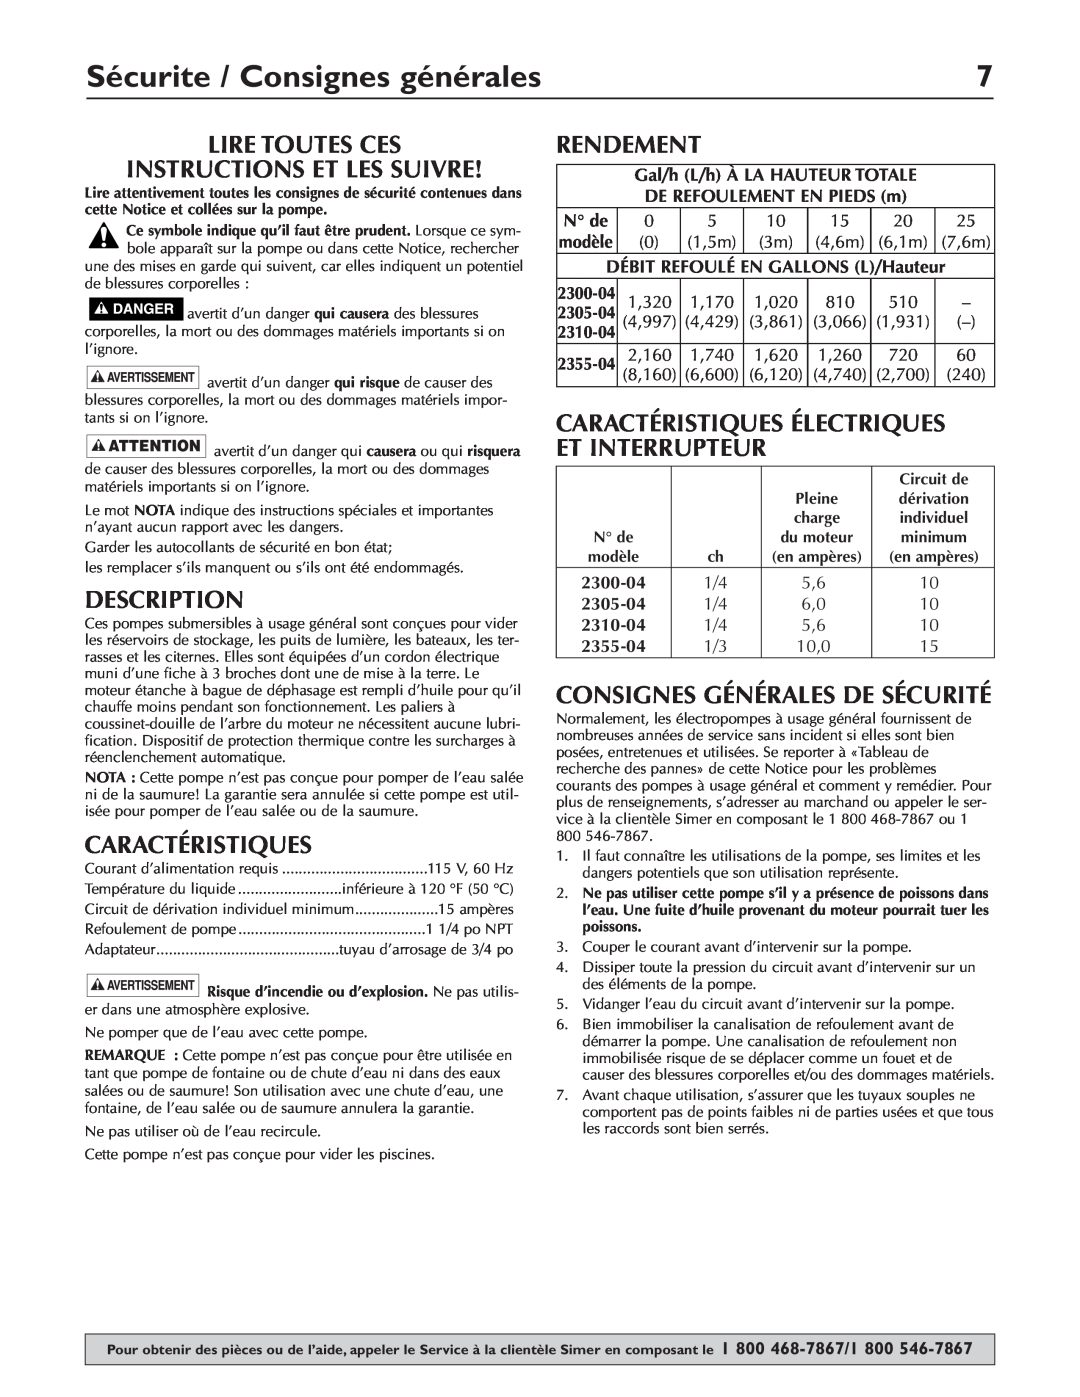 Simer Pumps 2310-04 Sécurite / Consignes générales, Lire Toutes Ces Instructions Et Les Suivre, Caractéristiques, N de 